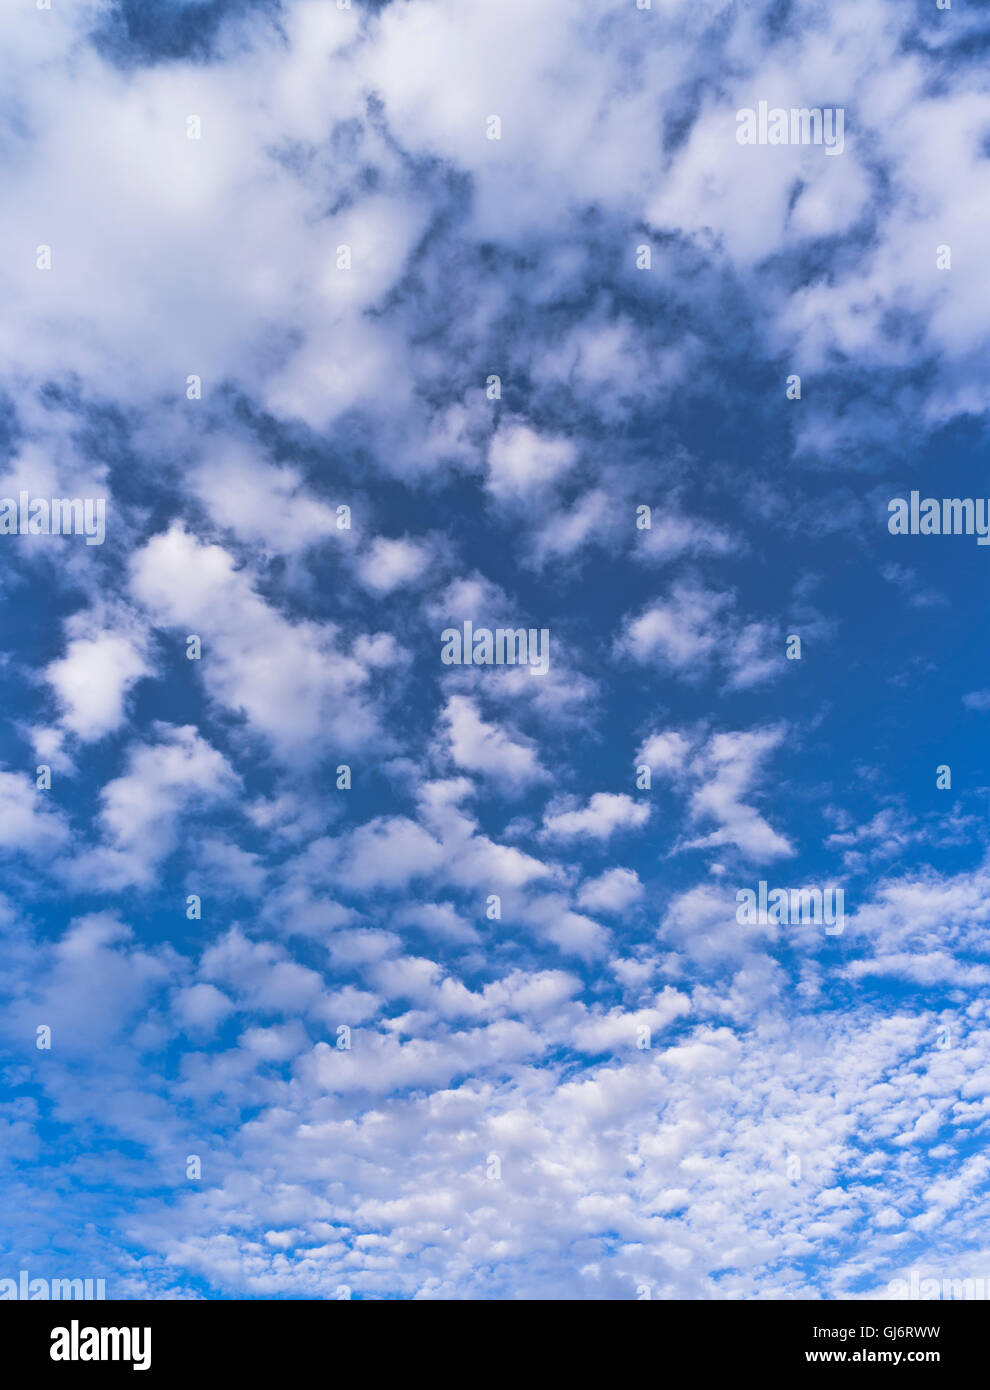 dh Clouds SKY UK nuvole bianche nuvole di fondo nuvola su cielo blu cielo cielo con nessuno Foto Stock